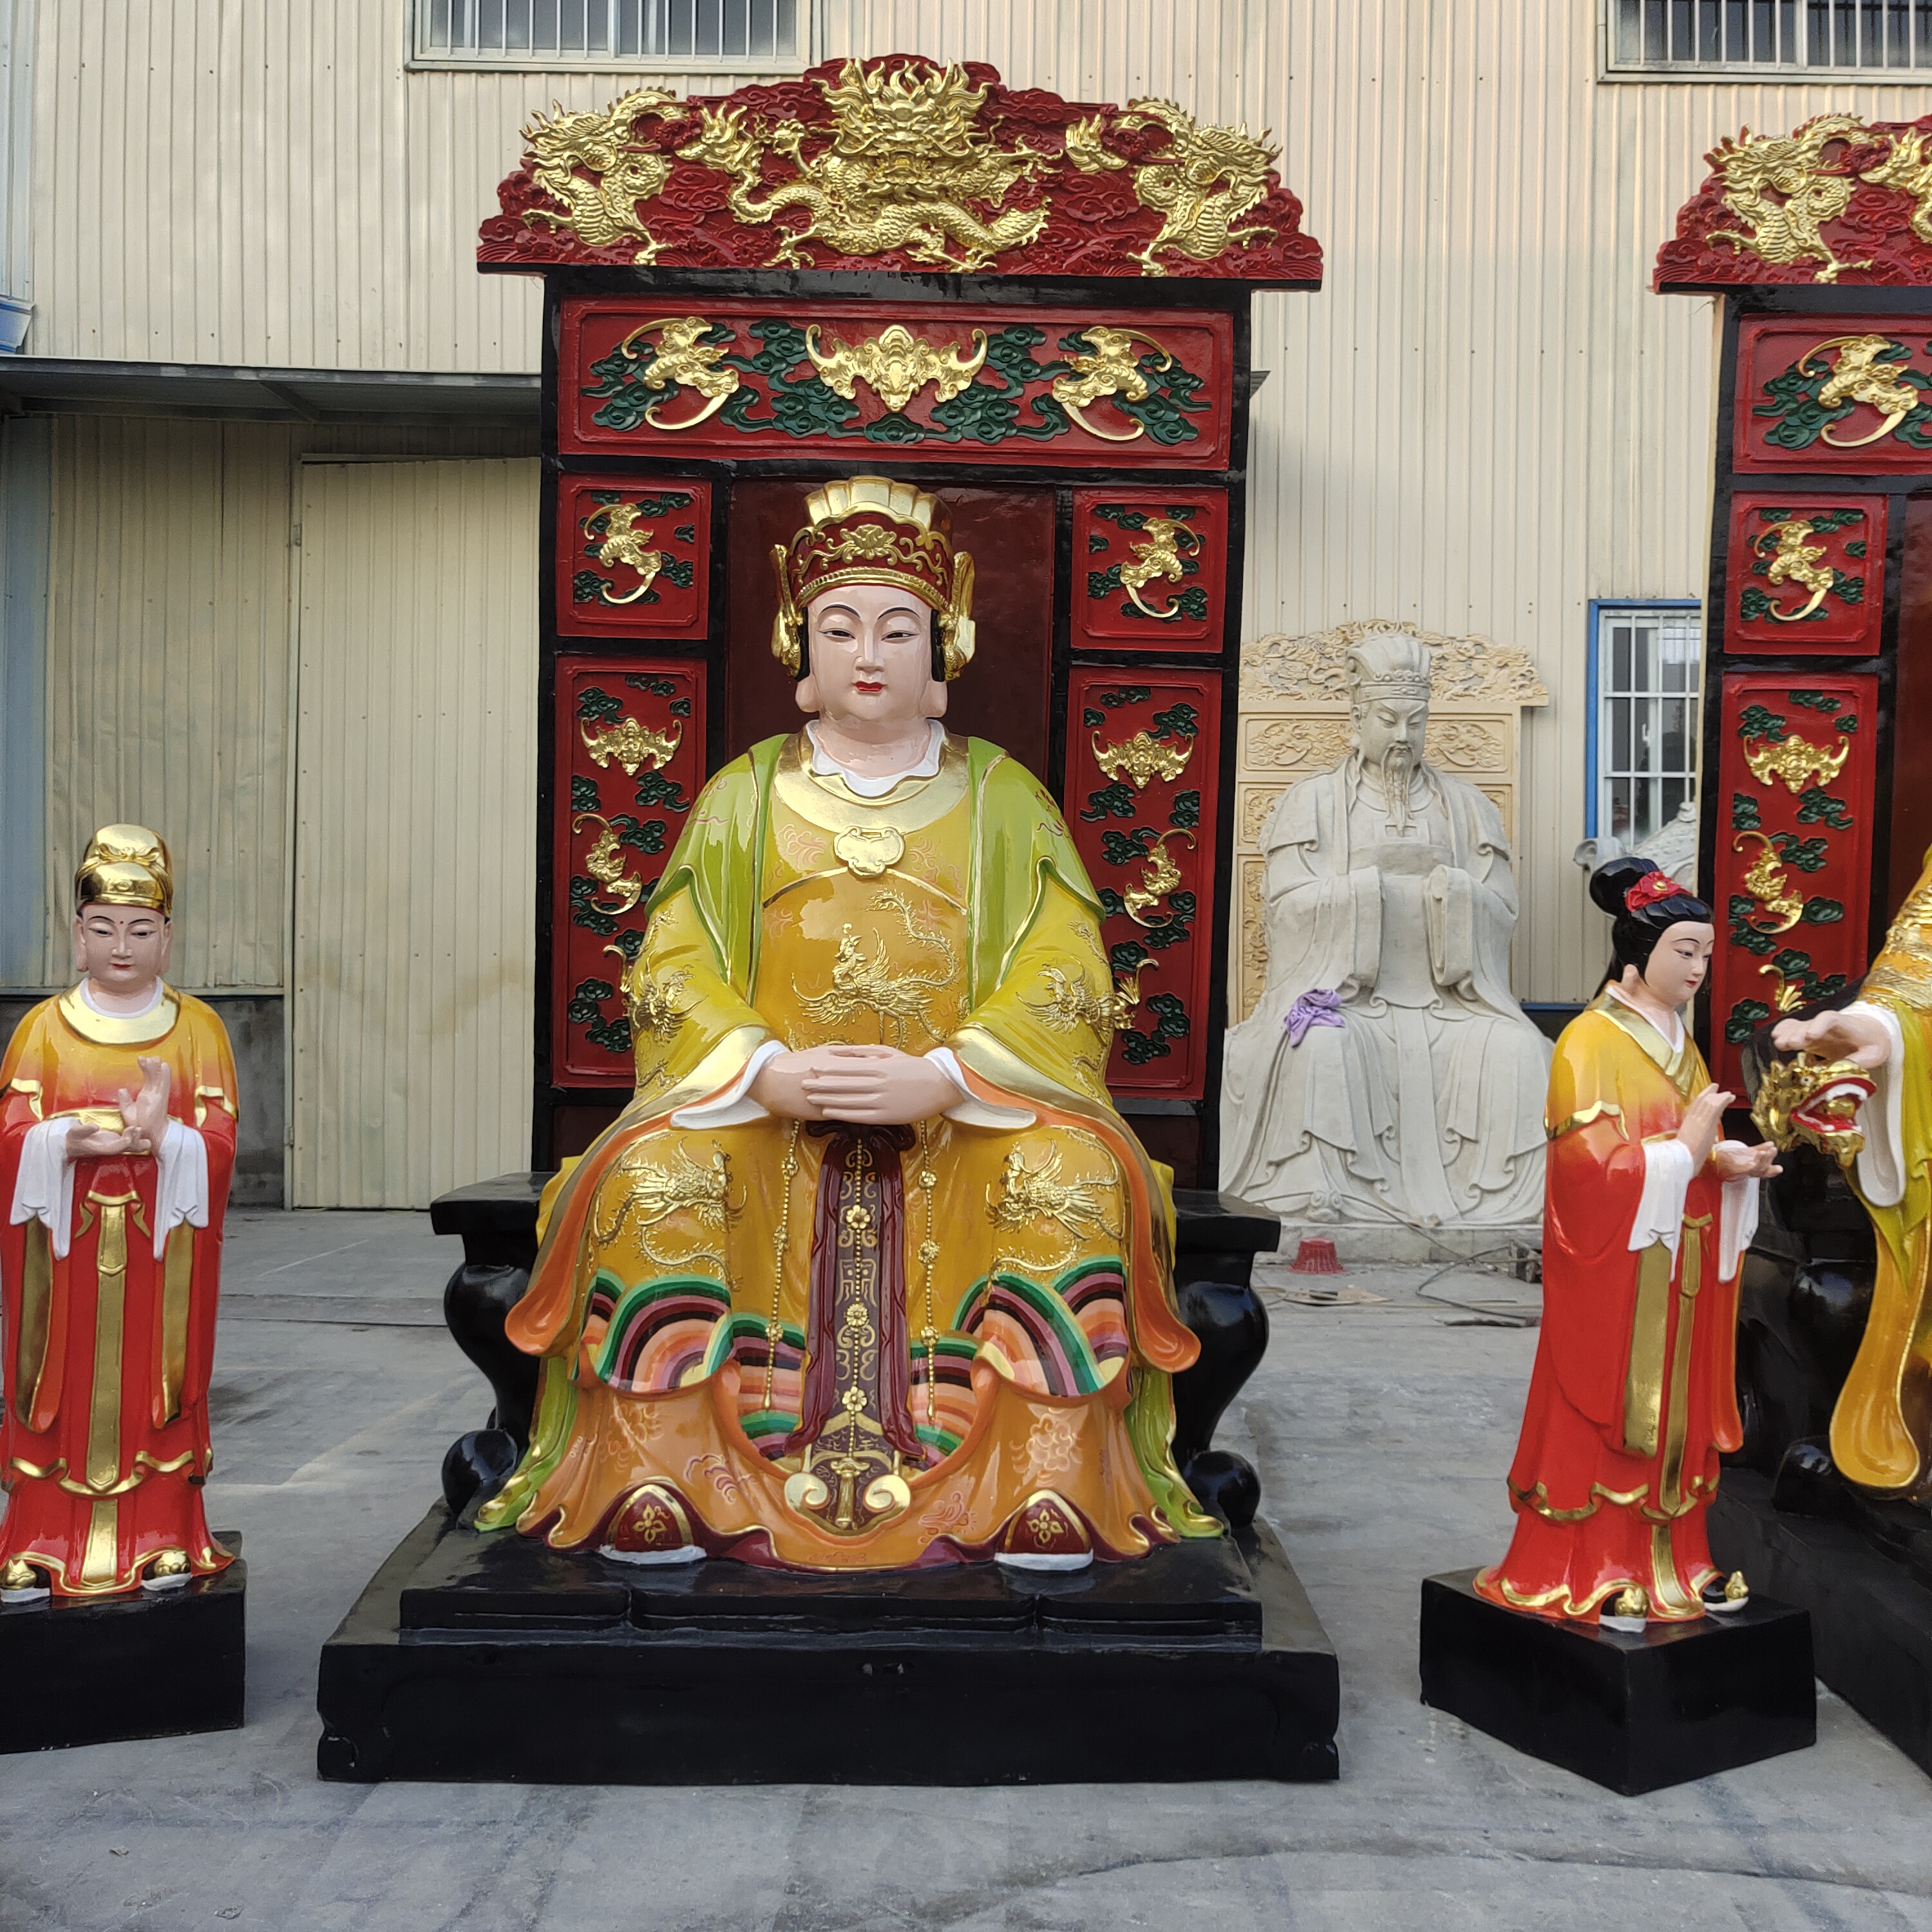 坐九龙椅玉皇大帝神像 西王母王母娘娘神像摆件 彩绘贴金佛像摆件